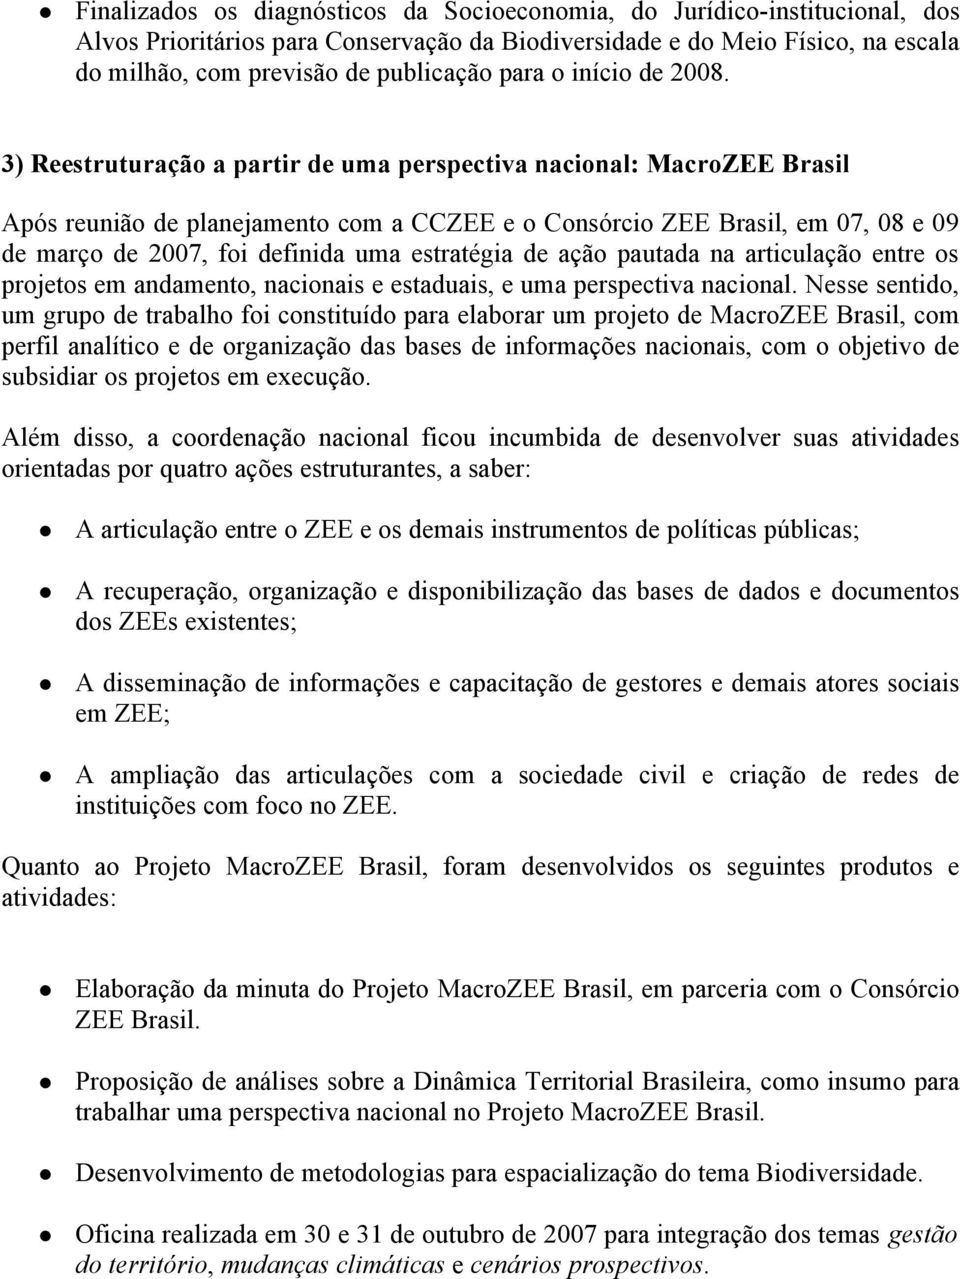 3) Reestruturação a partir de uma perspectiva nacional: MacroZEE Brasil Após reunião de planejamento com a CCZEE e o Consórcio ZEE Brasil, em 07, 08 e 09 de março de 2007, foi definida uma estratégia